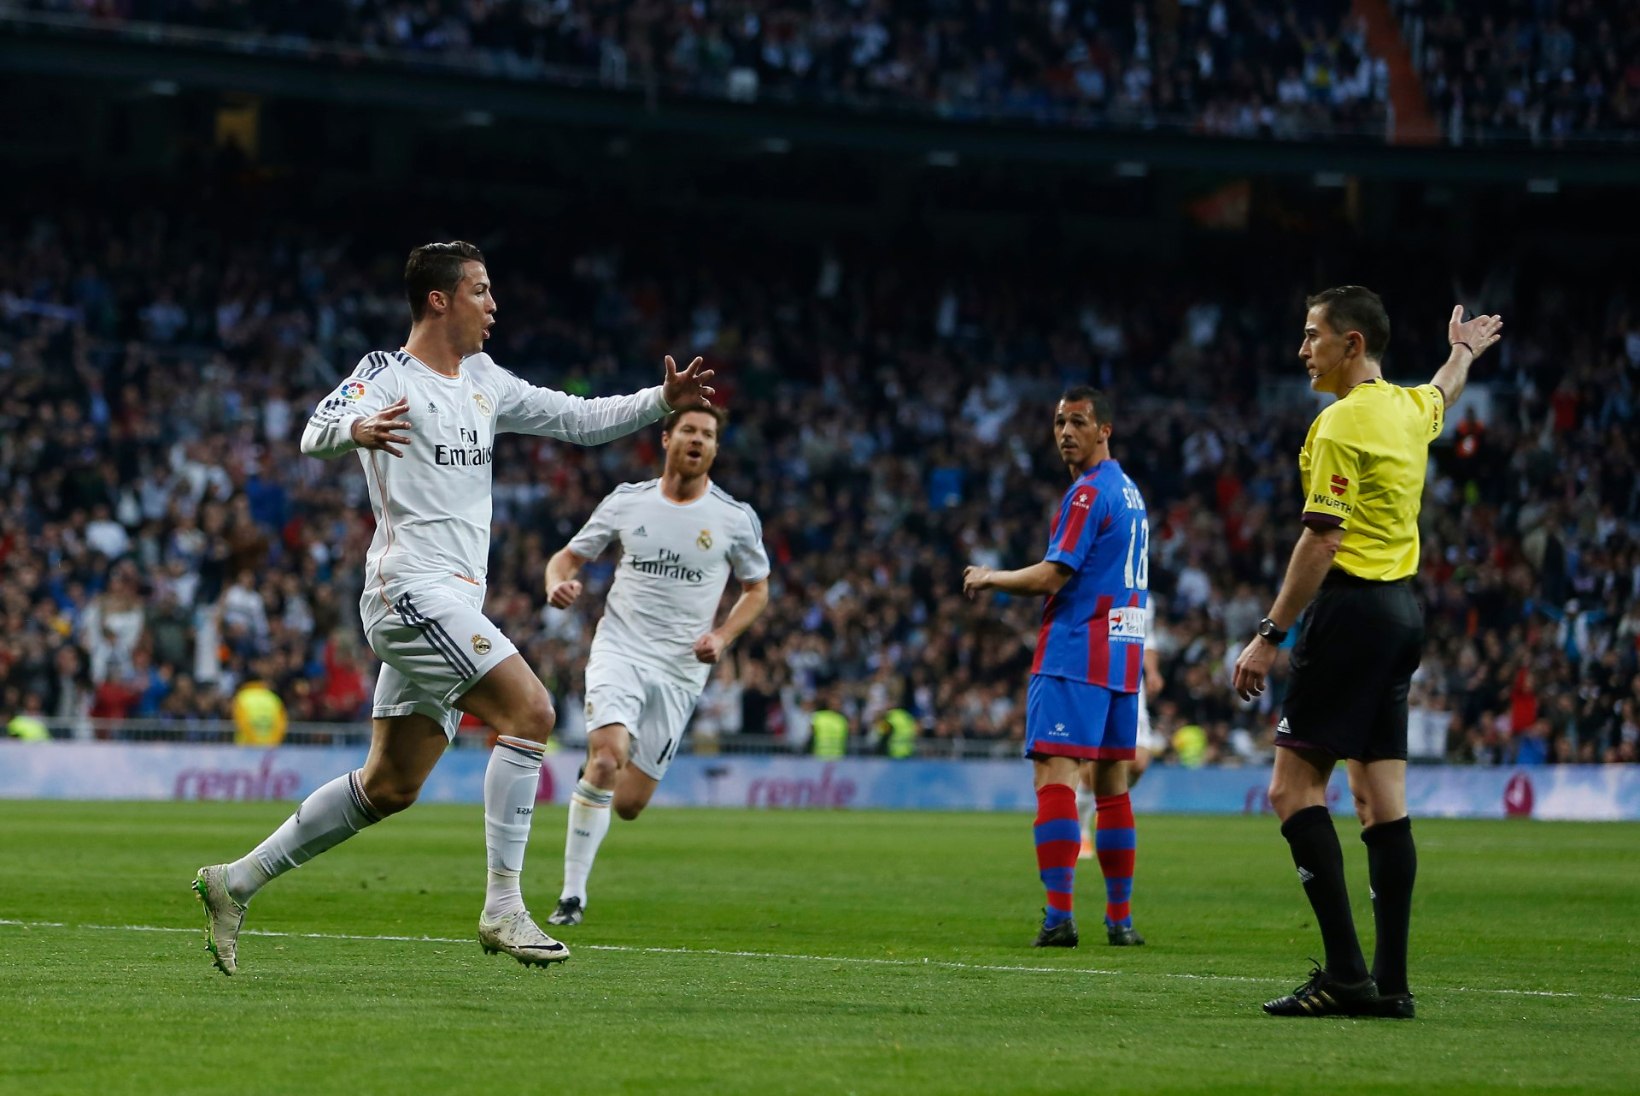 GALERII: Madridi Real tõusis taas ainuliidriks